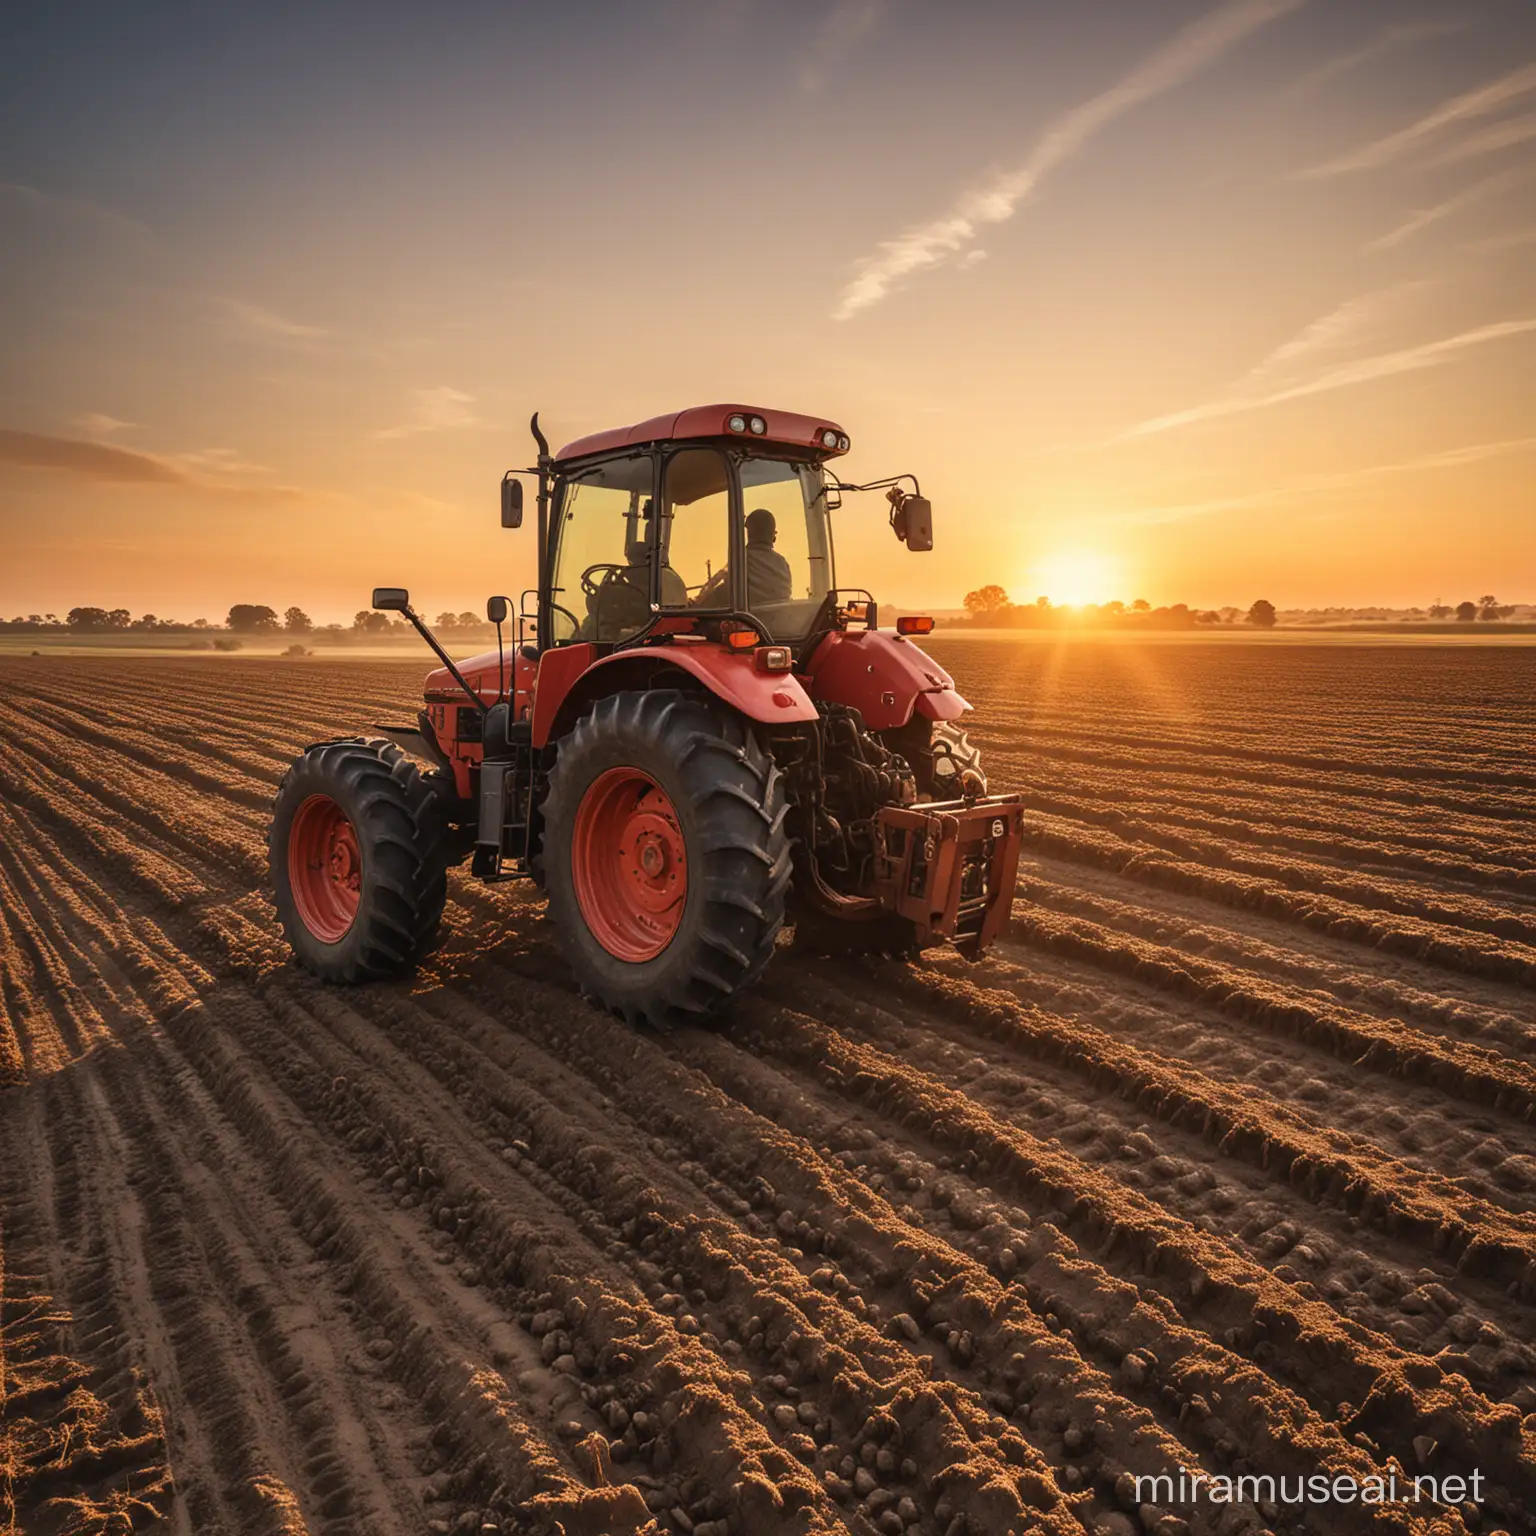 photographie réaliste d'un agriculteur conduisant un tracteur dans un champ au coucher du soleil